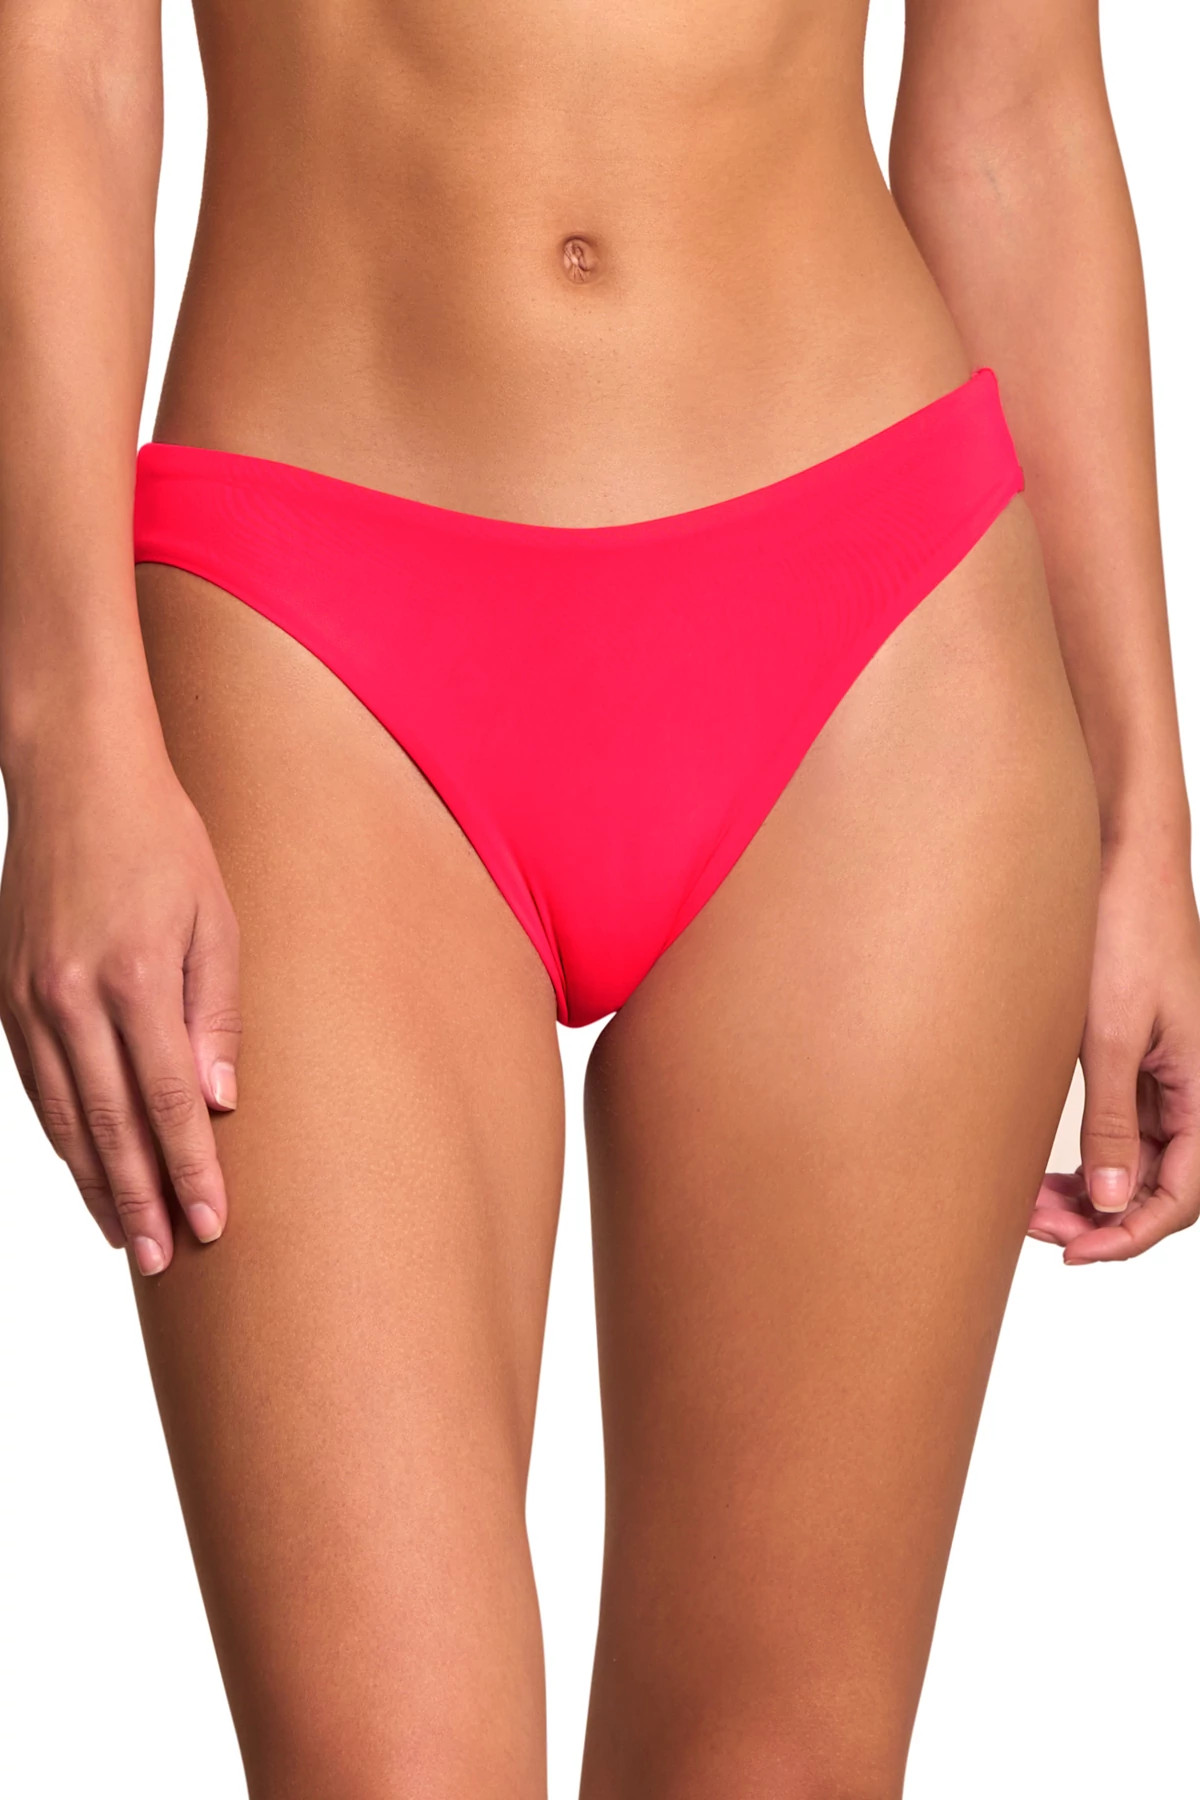 Açaí Bikini Bottom - Cherry Red